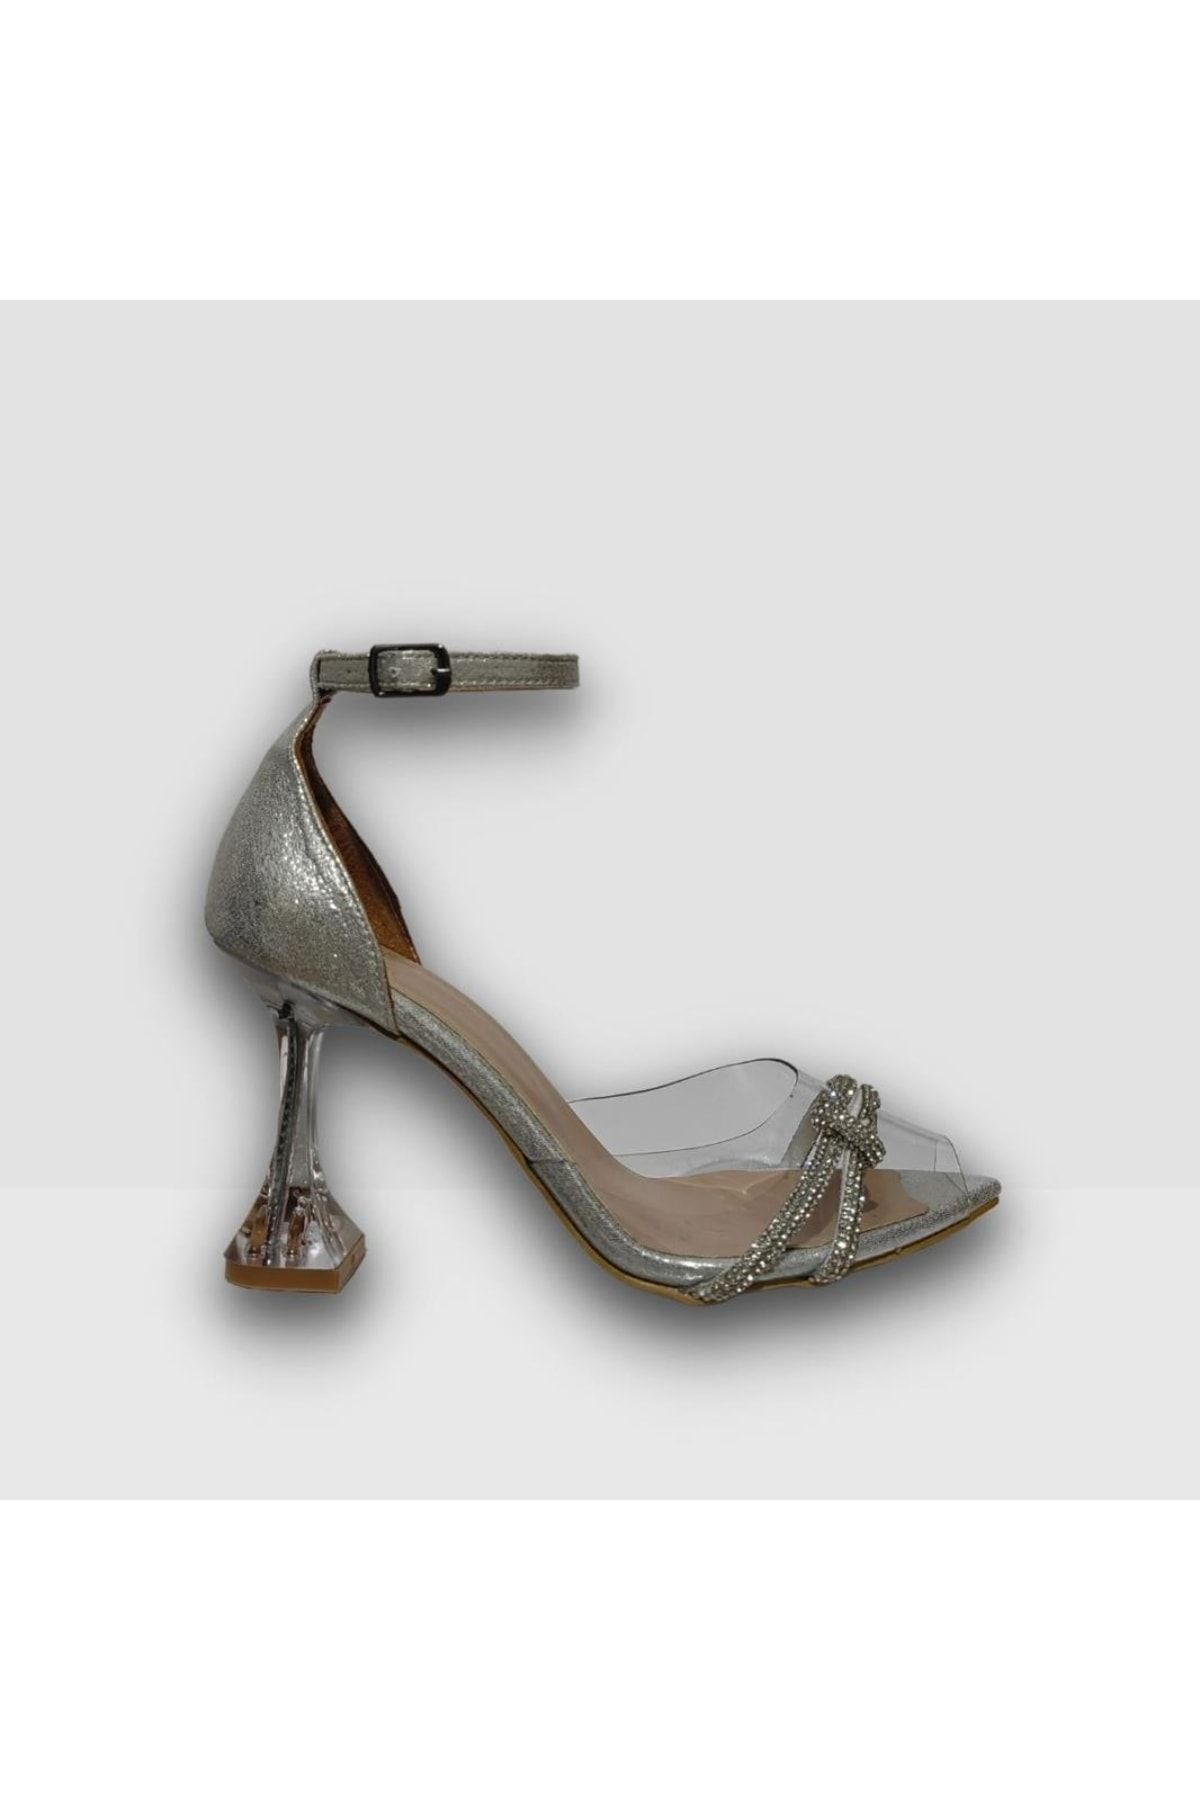 Venüs Hobby 23531-1 Taşlı Abiye Kadın Topuklu Ayakkabı